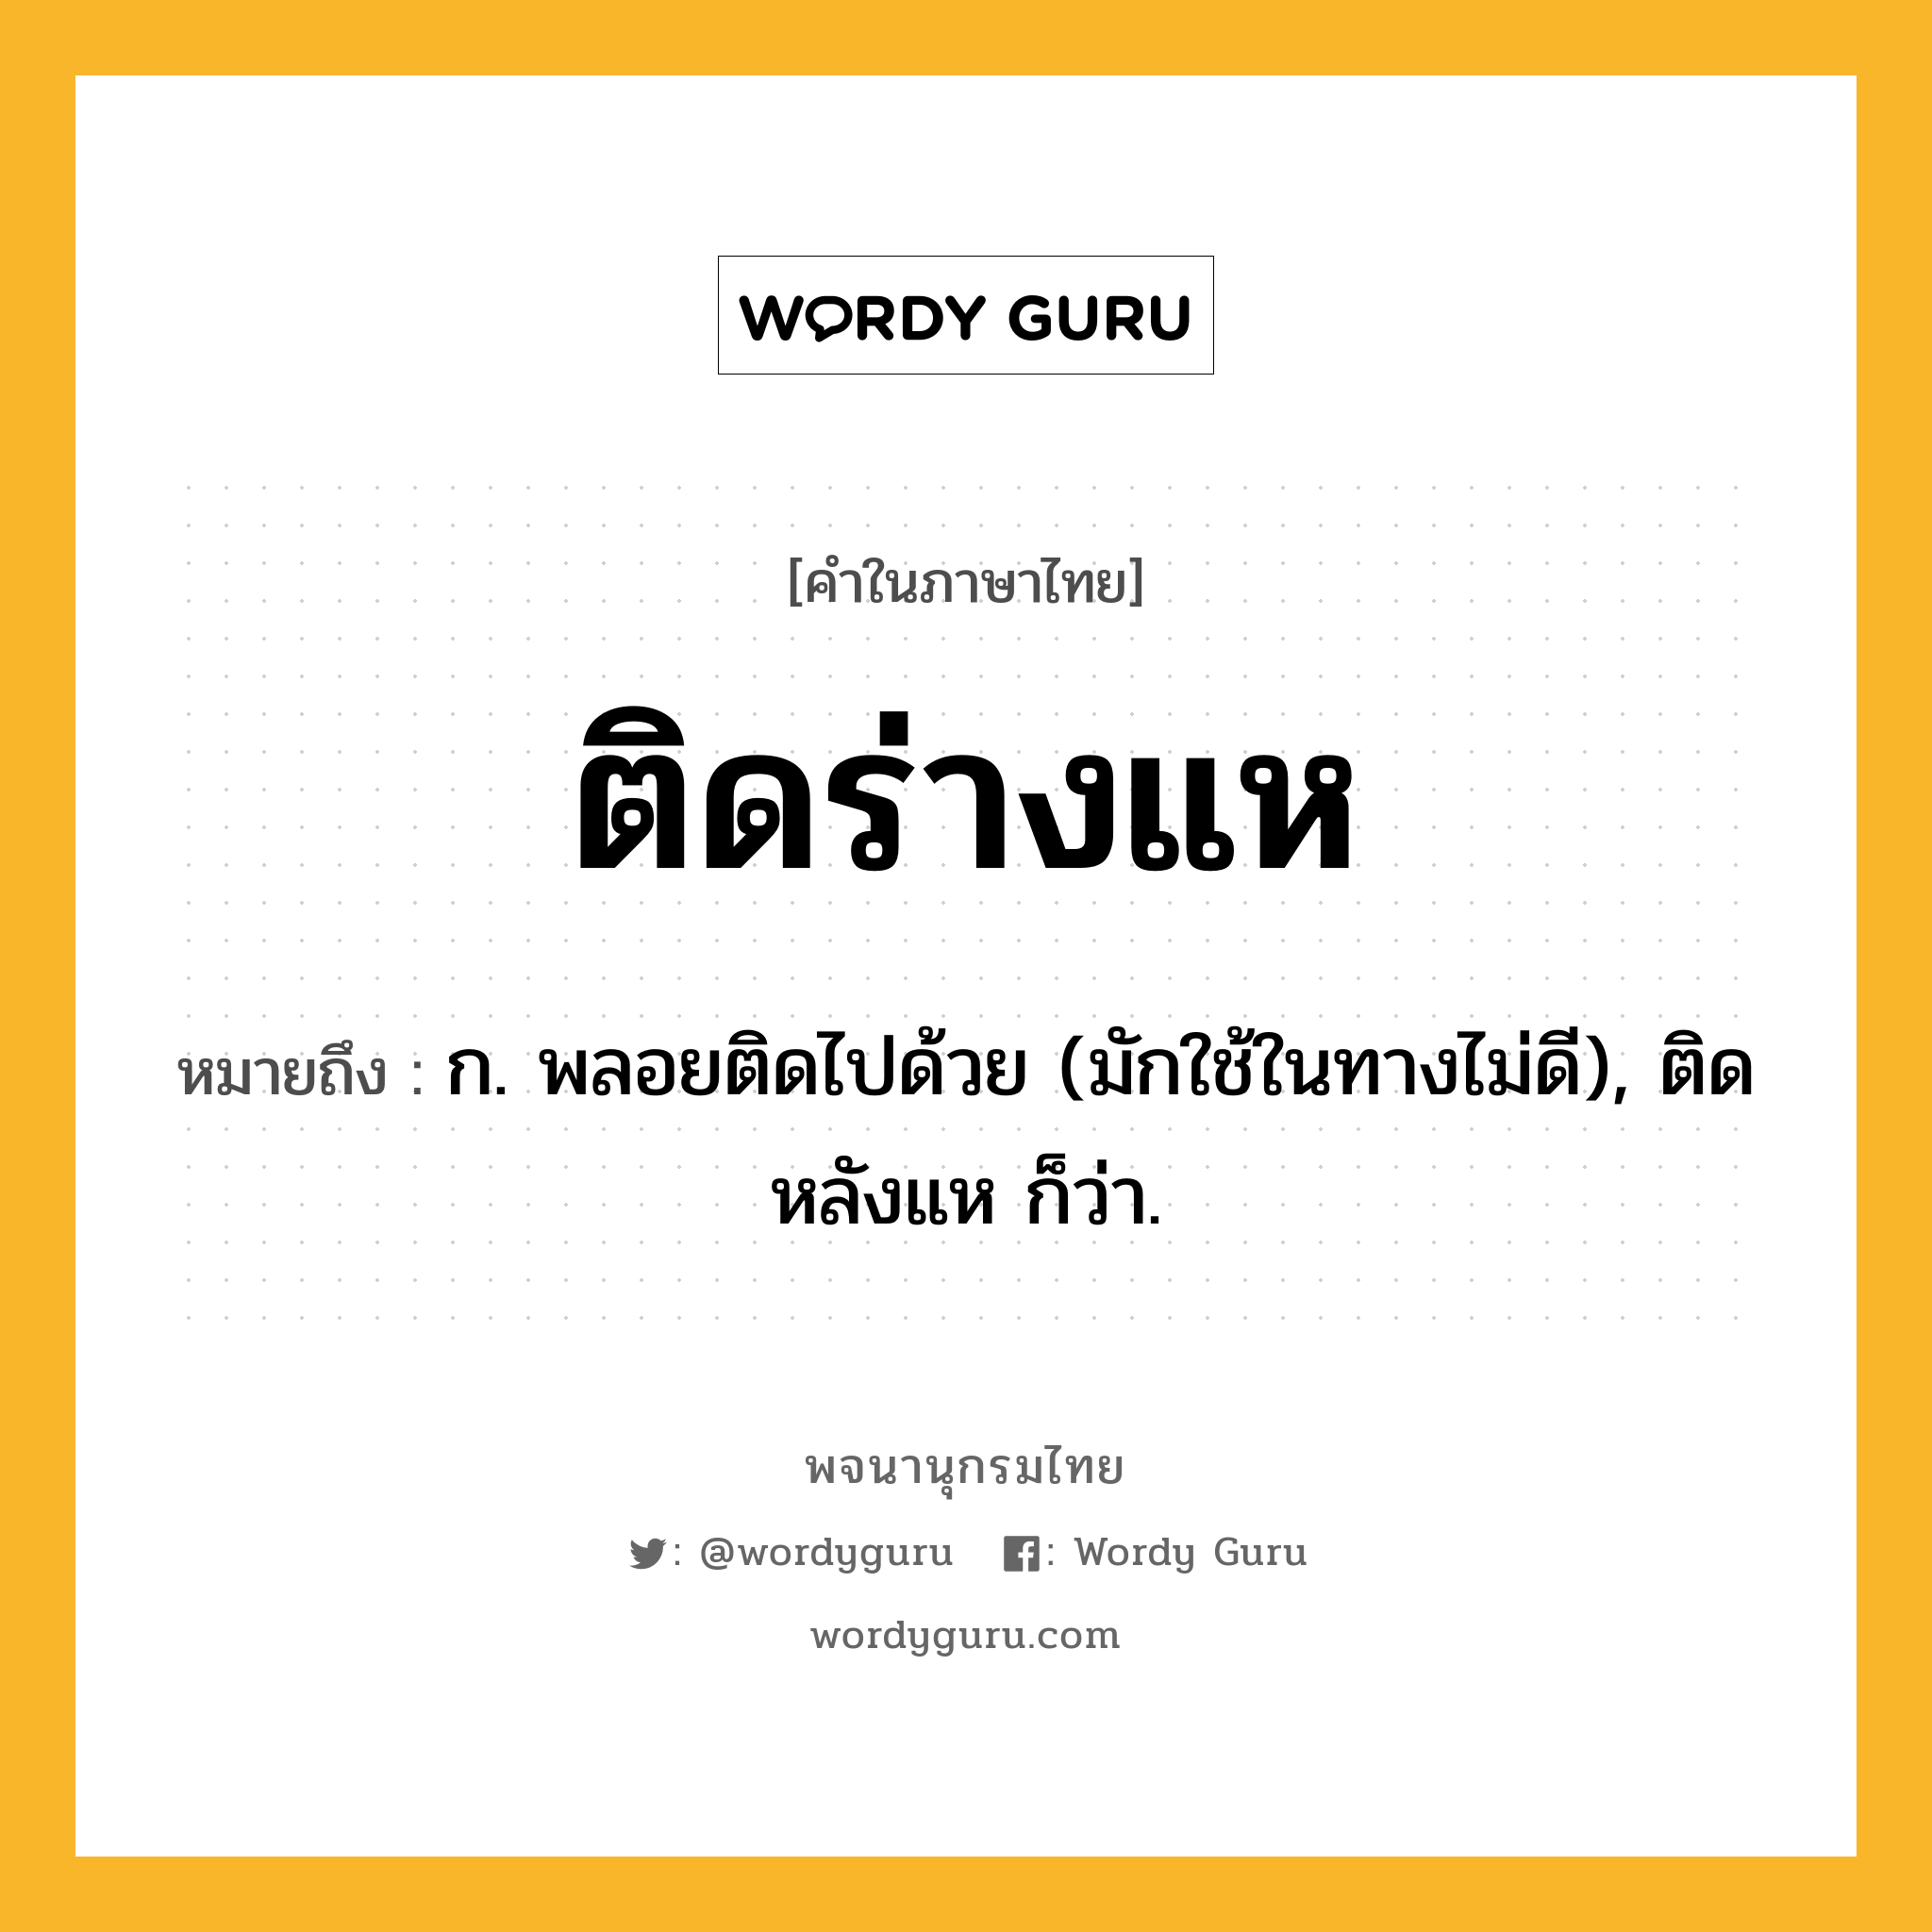 ติดร่างแห ความหมาย หมายถึงอะไร?, คำในภาษาไทย ติดร่างแห หมายถึง ก. พลอยติดไปด้วย (มักใช้ในทางไม่ดี), ติดหลังแห ก็ว่า.